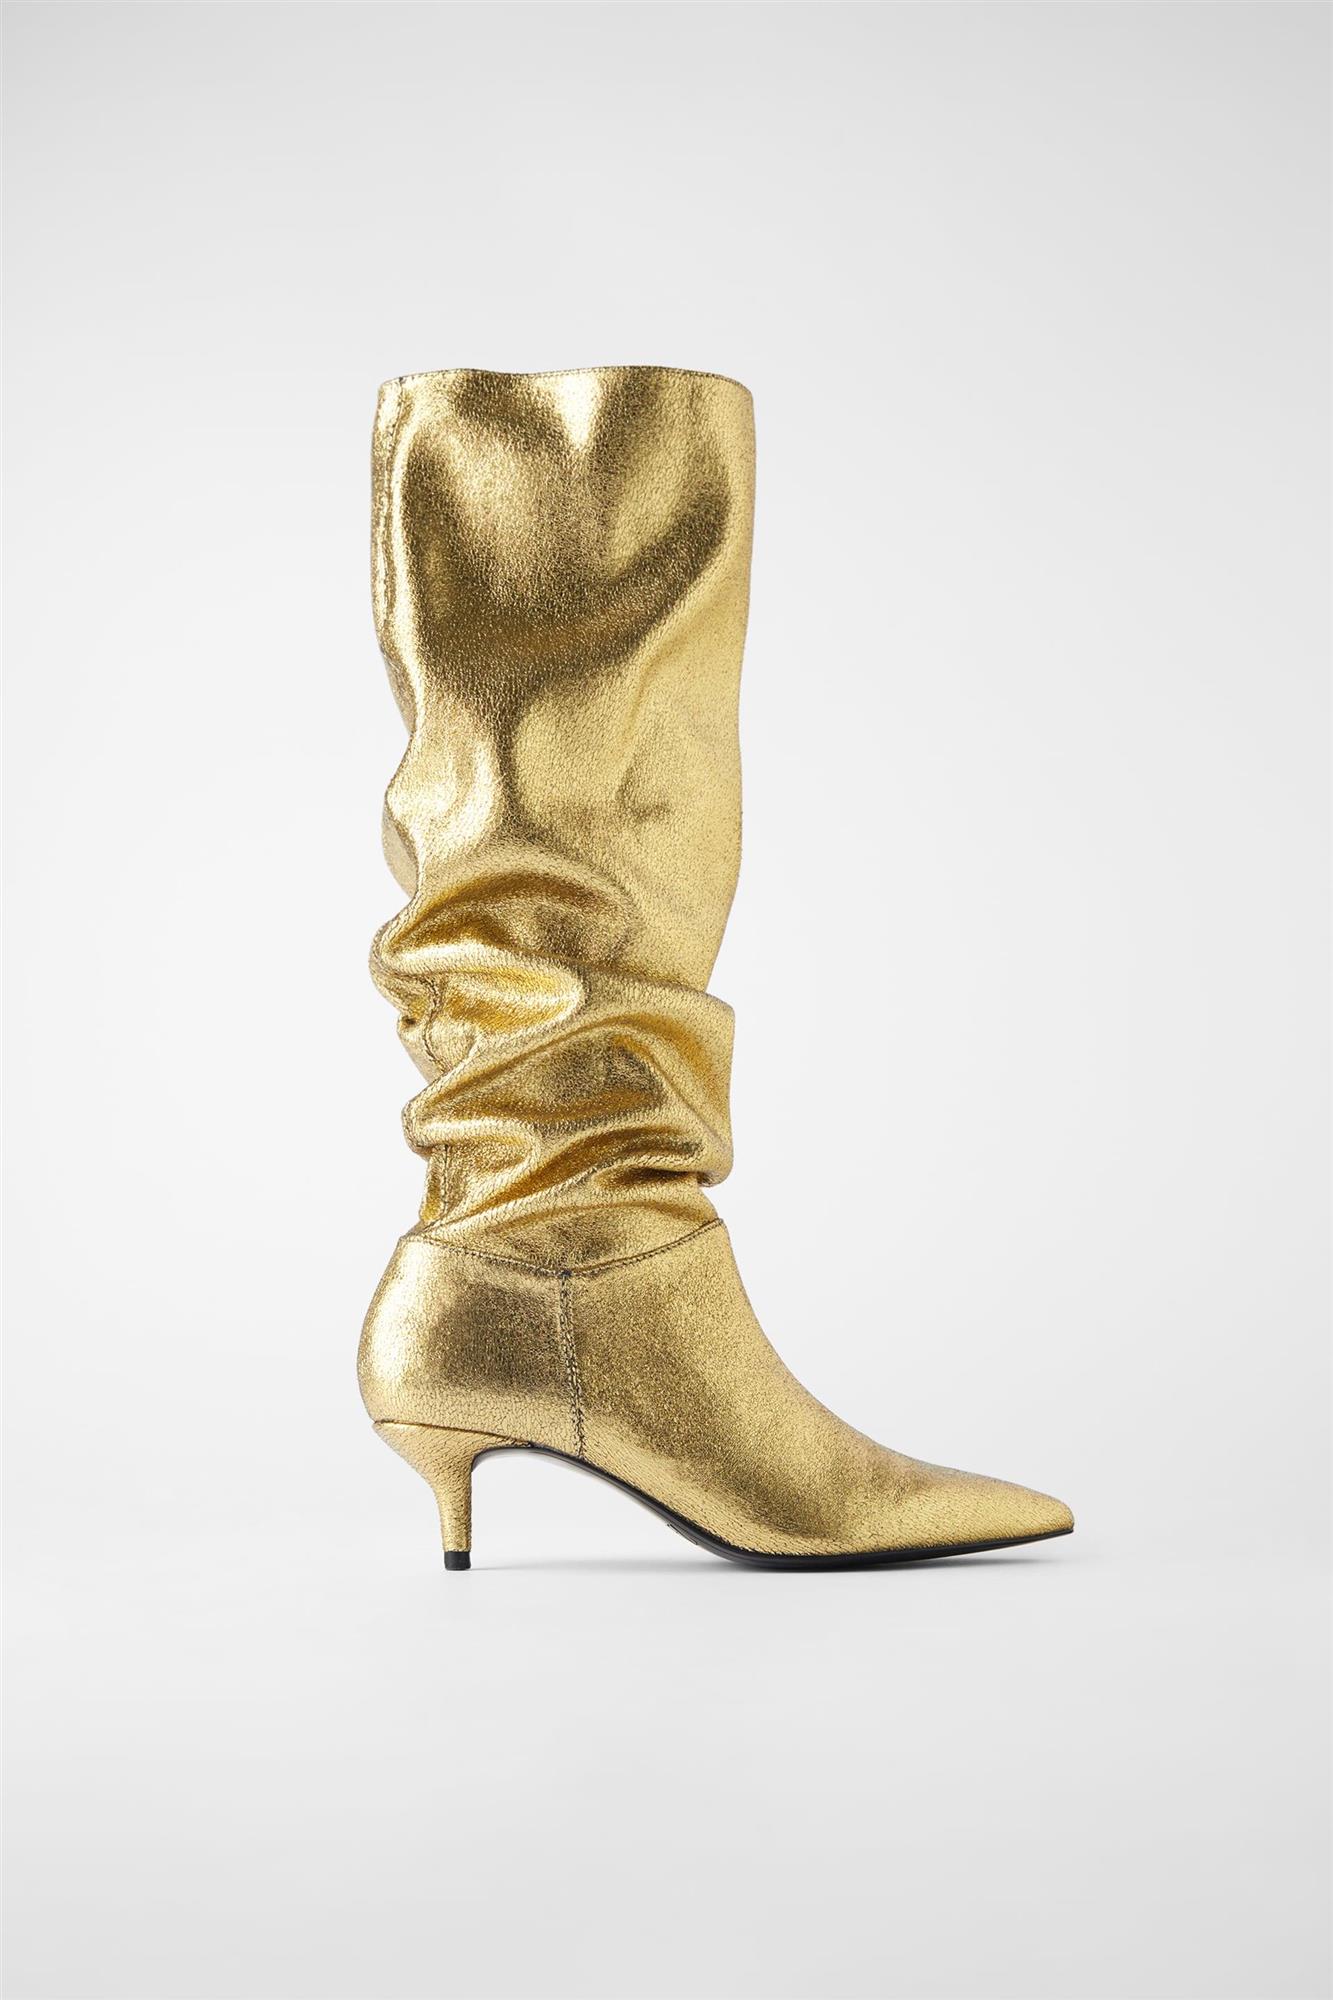 Botas de tacón doradas, de Zara